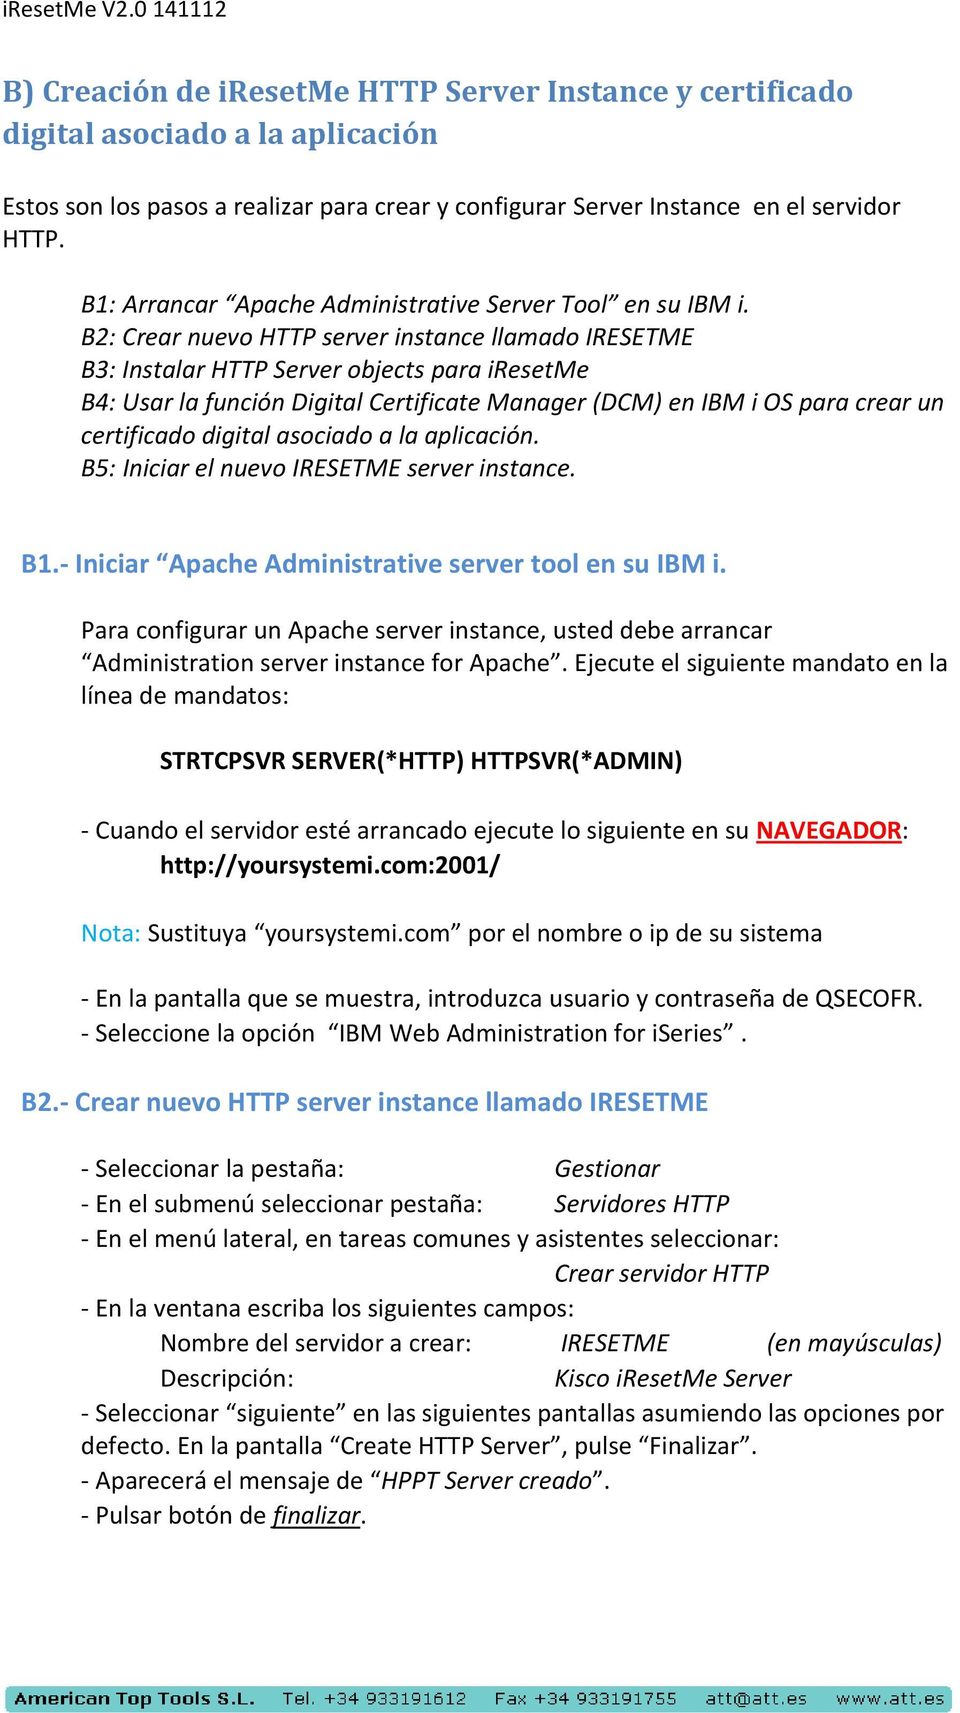 B2: Crear nuevo HTTP server instance llamado IRESETME B3: Instalar HTTP Server objects para iresetme B4: Usar la función Digital Certificate Manager (DCM) en IBM i OS para crear un certificado